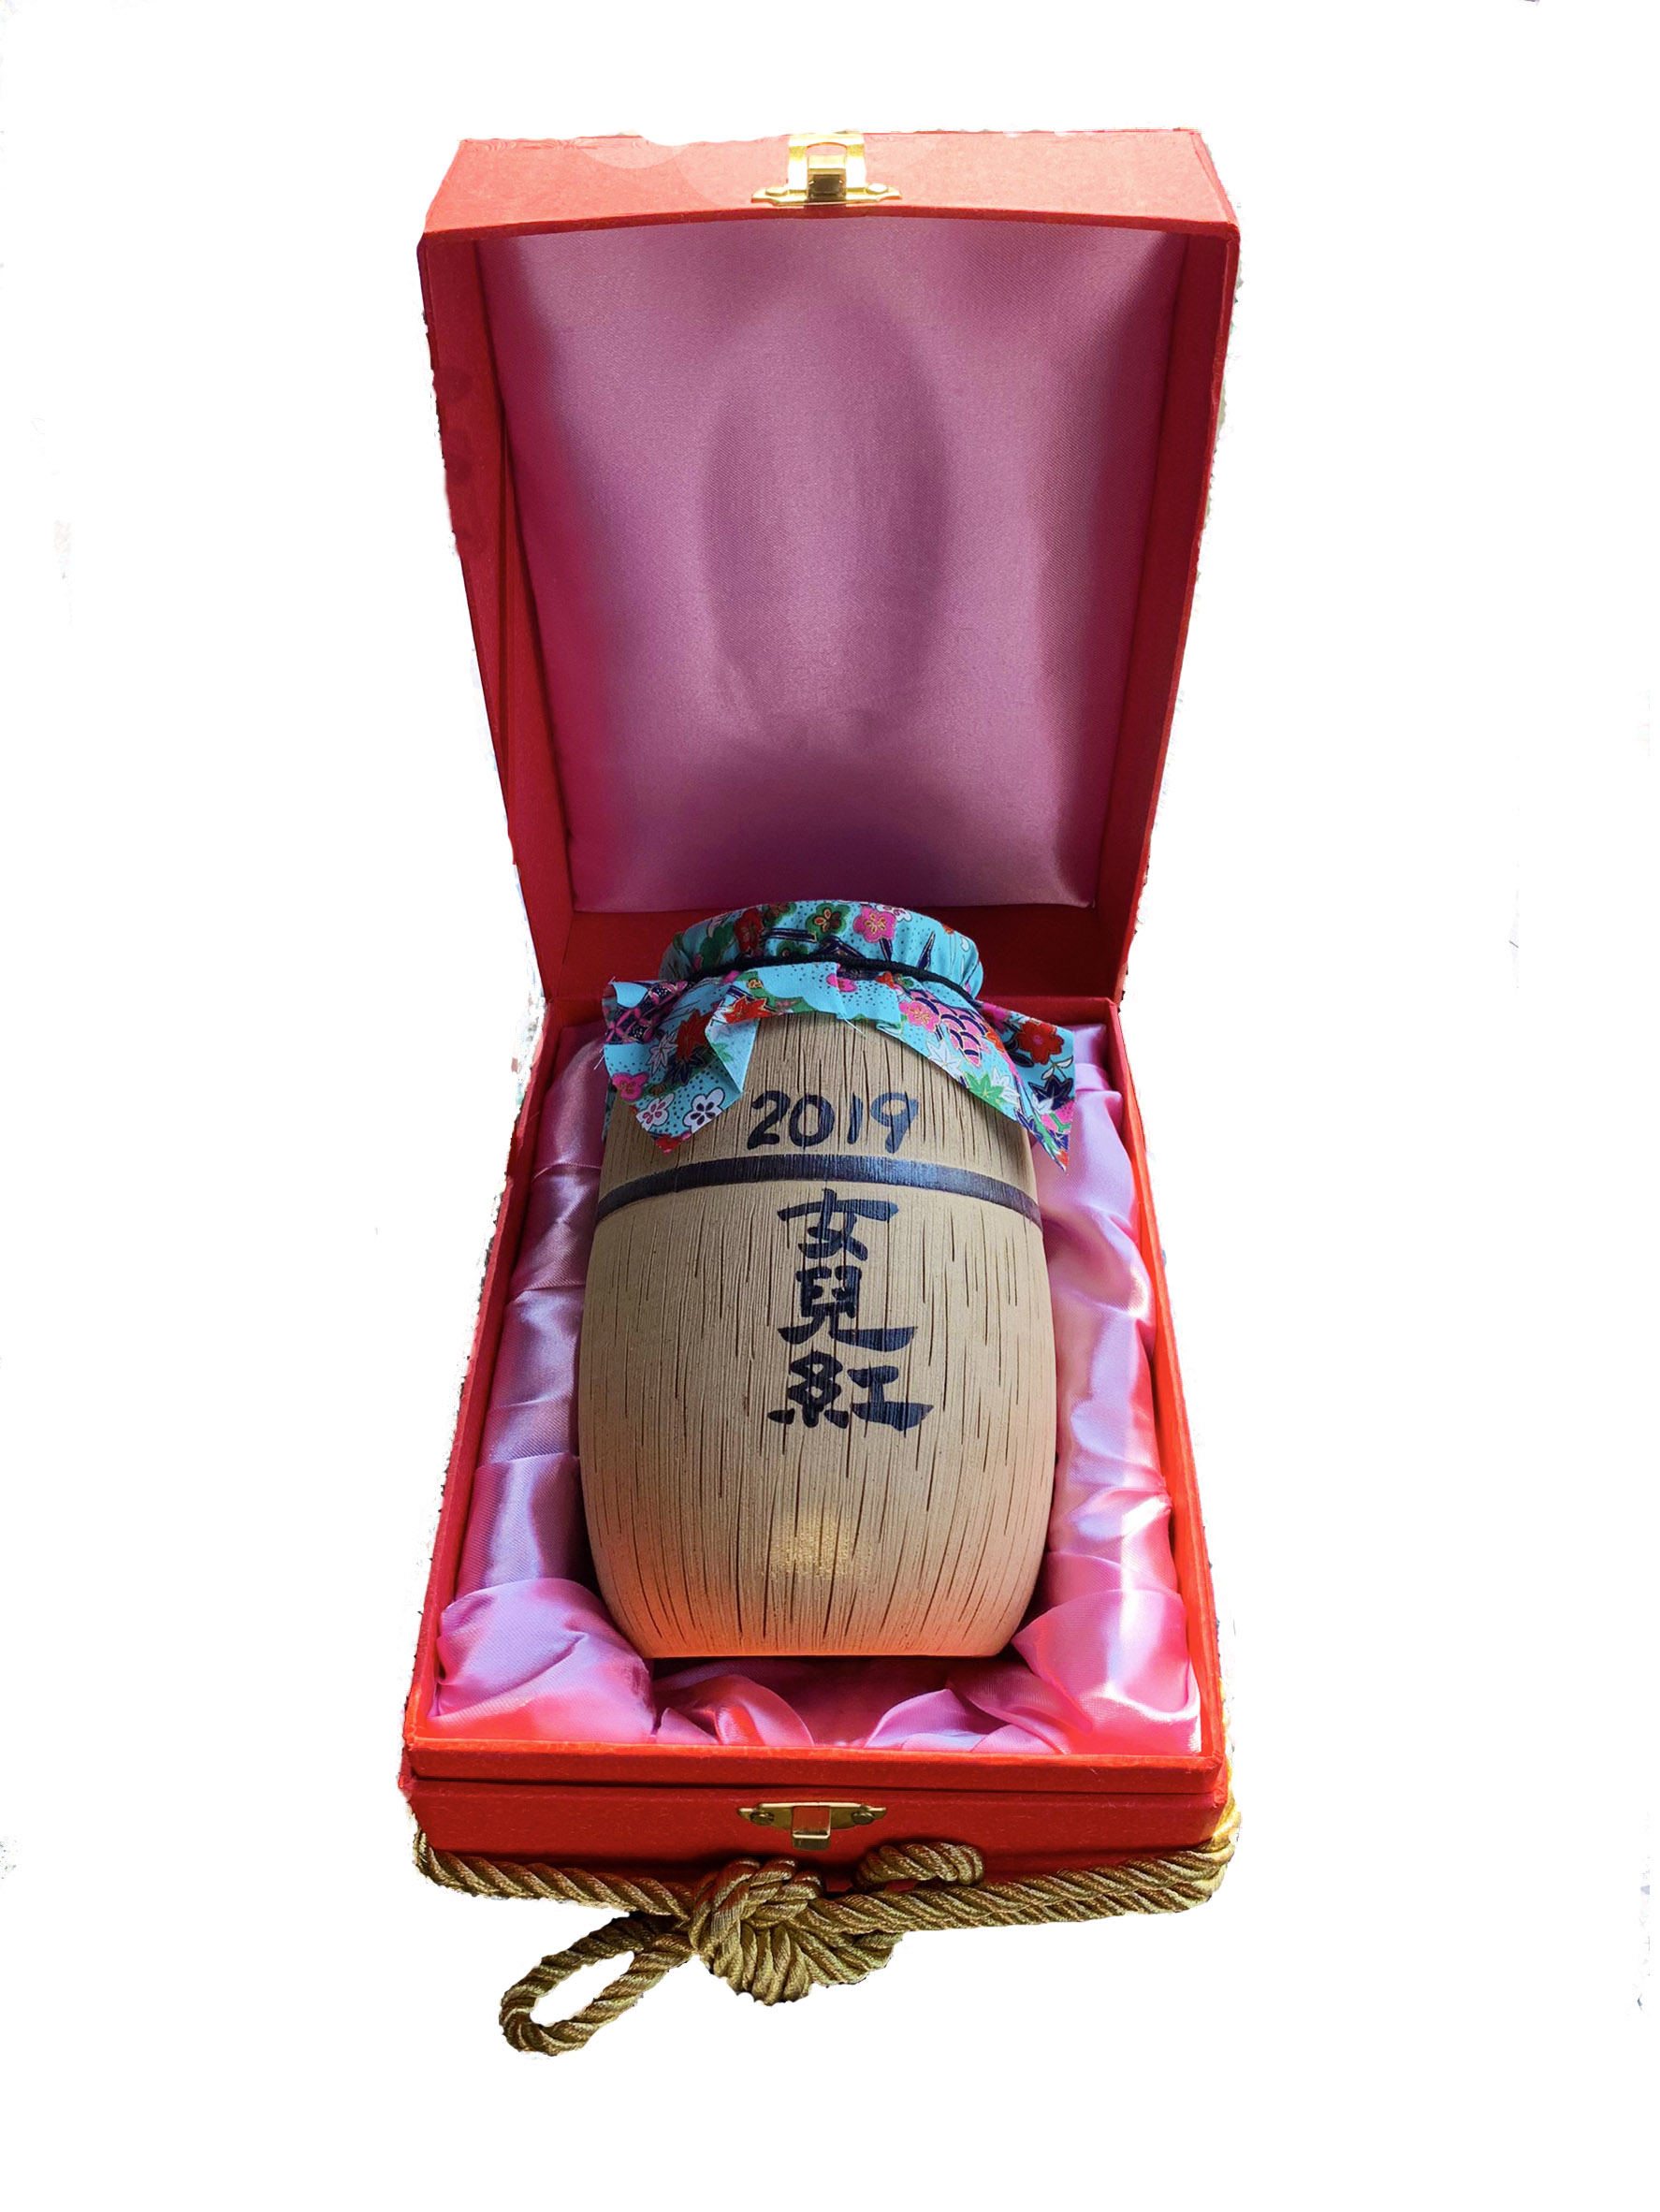 2019公主蜜香紅茶150g(含甕)